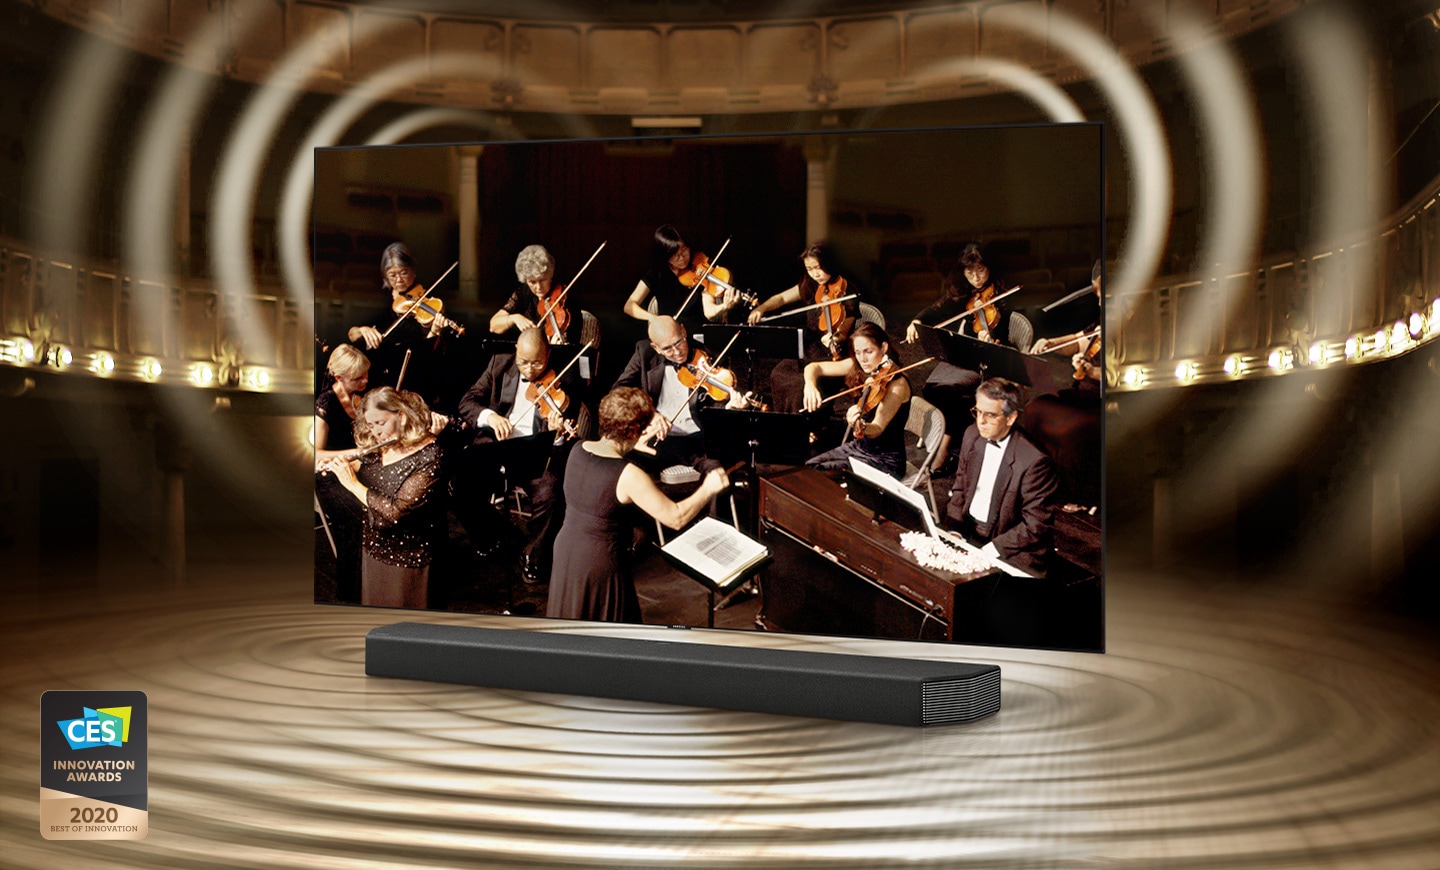 극장에서 오케스트라가 연주하는 장면이 TV화면에 나오며,  TV와 사운드바가 같이 놓여져 있습니다. 이미지 좌측 하단에는 2020 CES 혁신상 로고가 보여집니다.